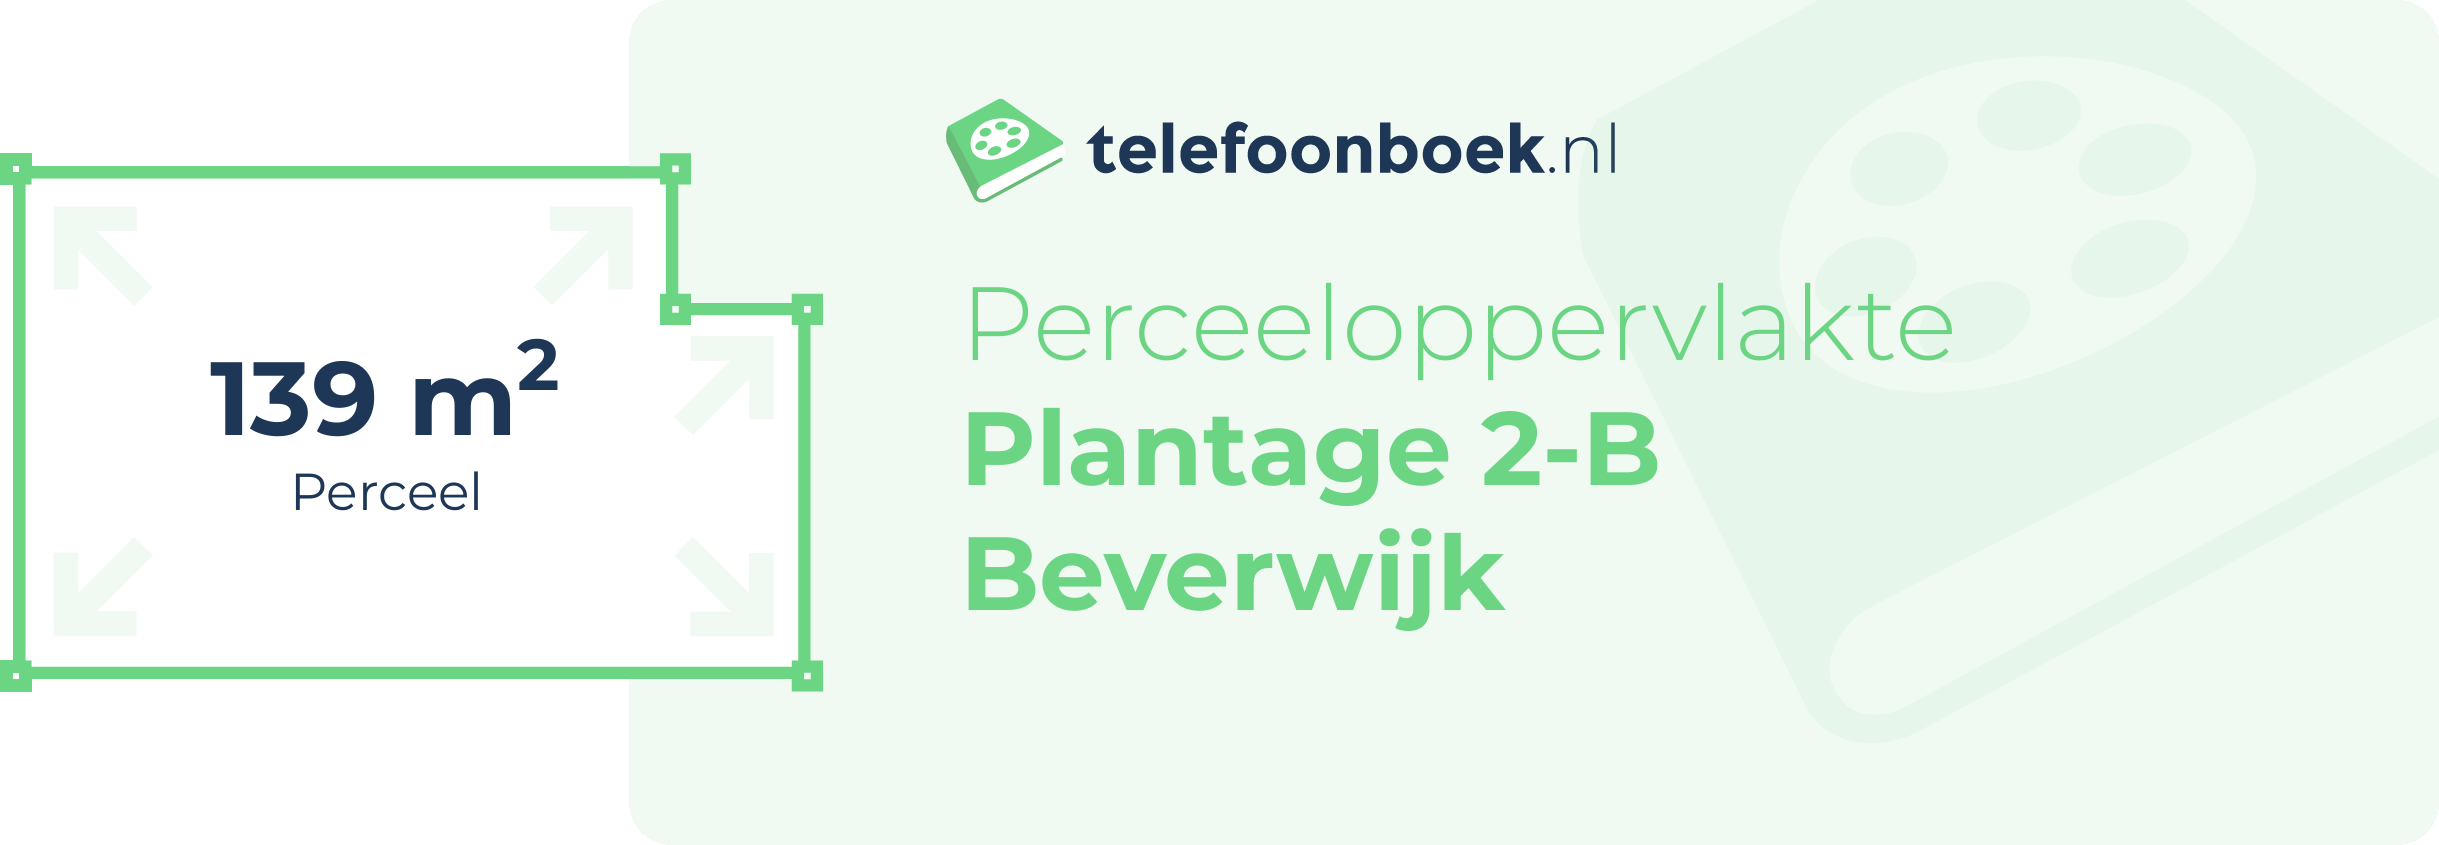 Perceeloppervlakte Plantage 2-B Beverwijk